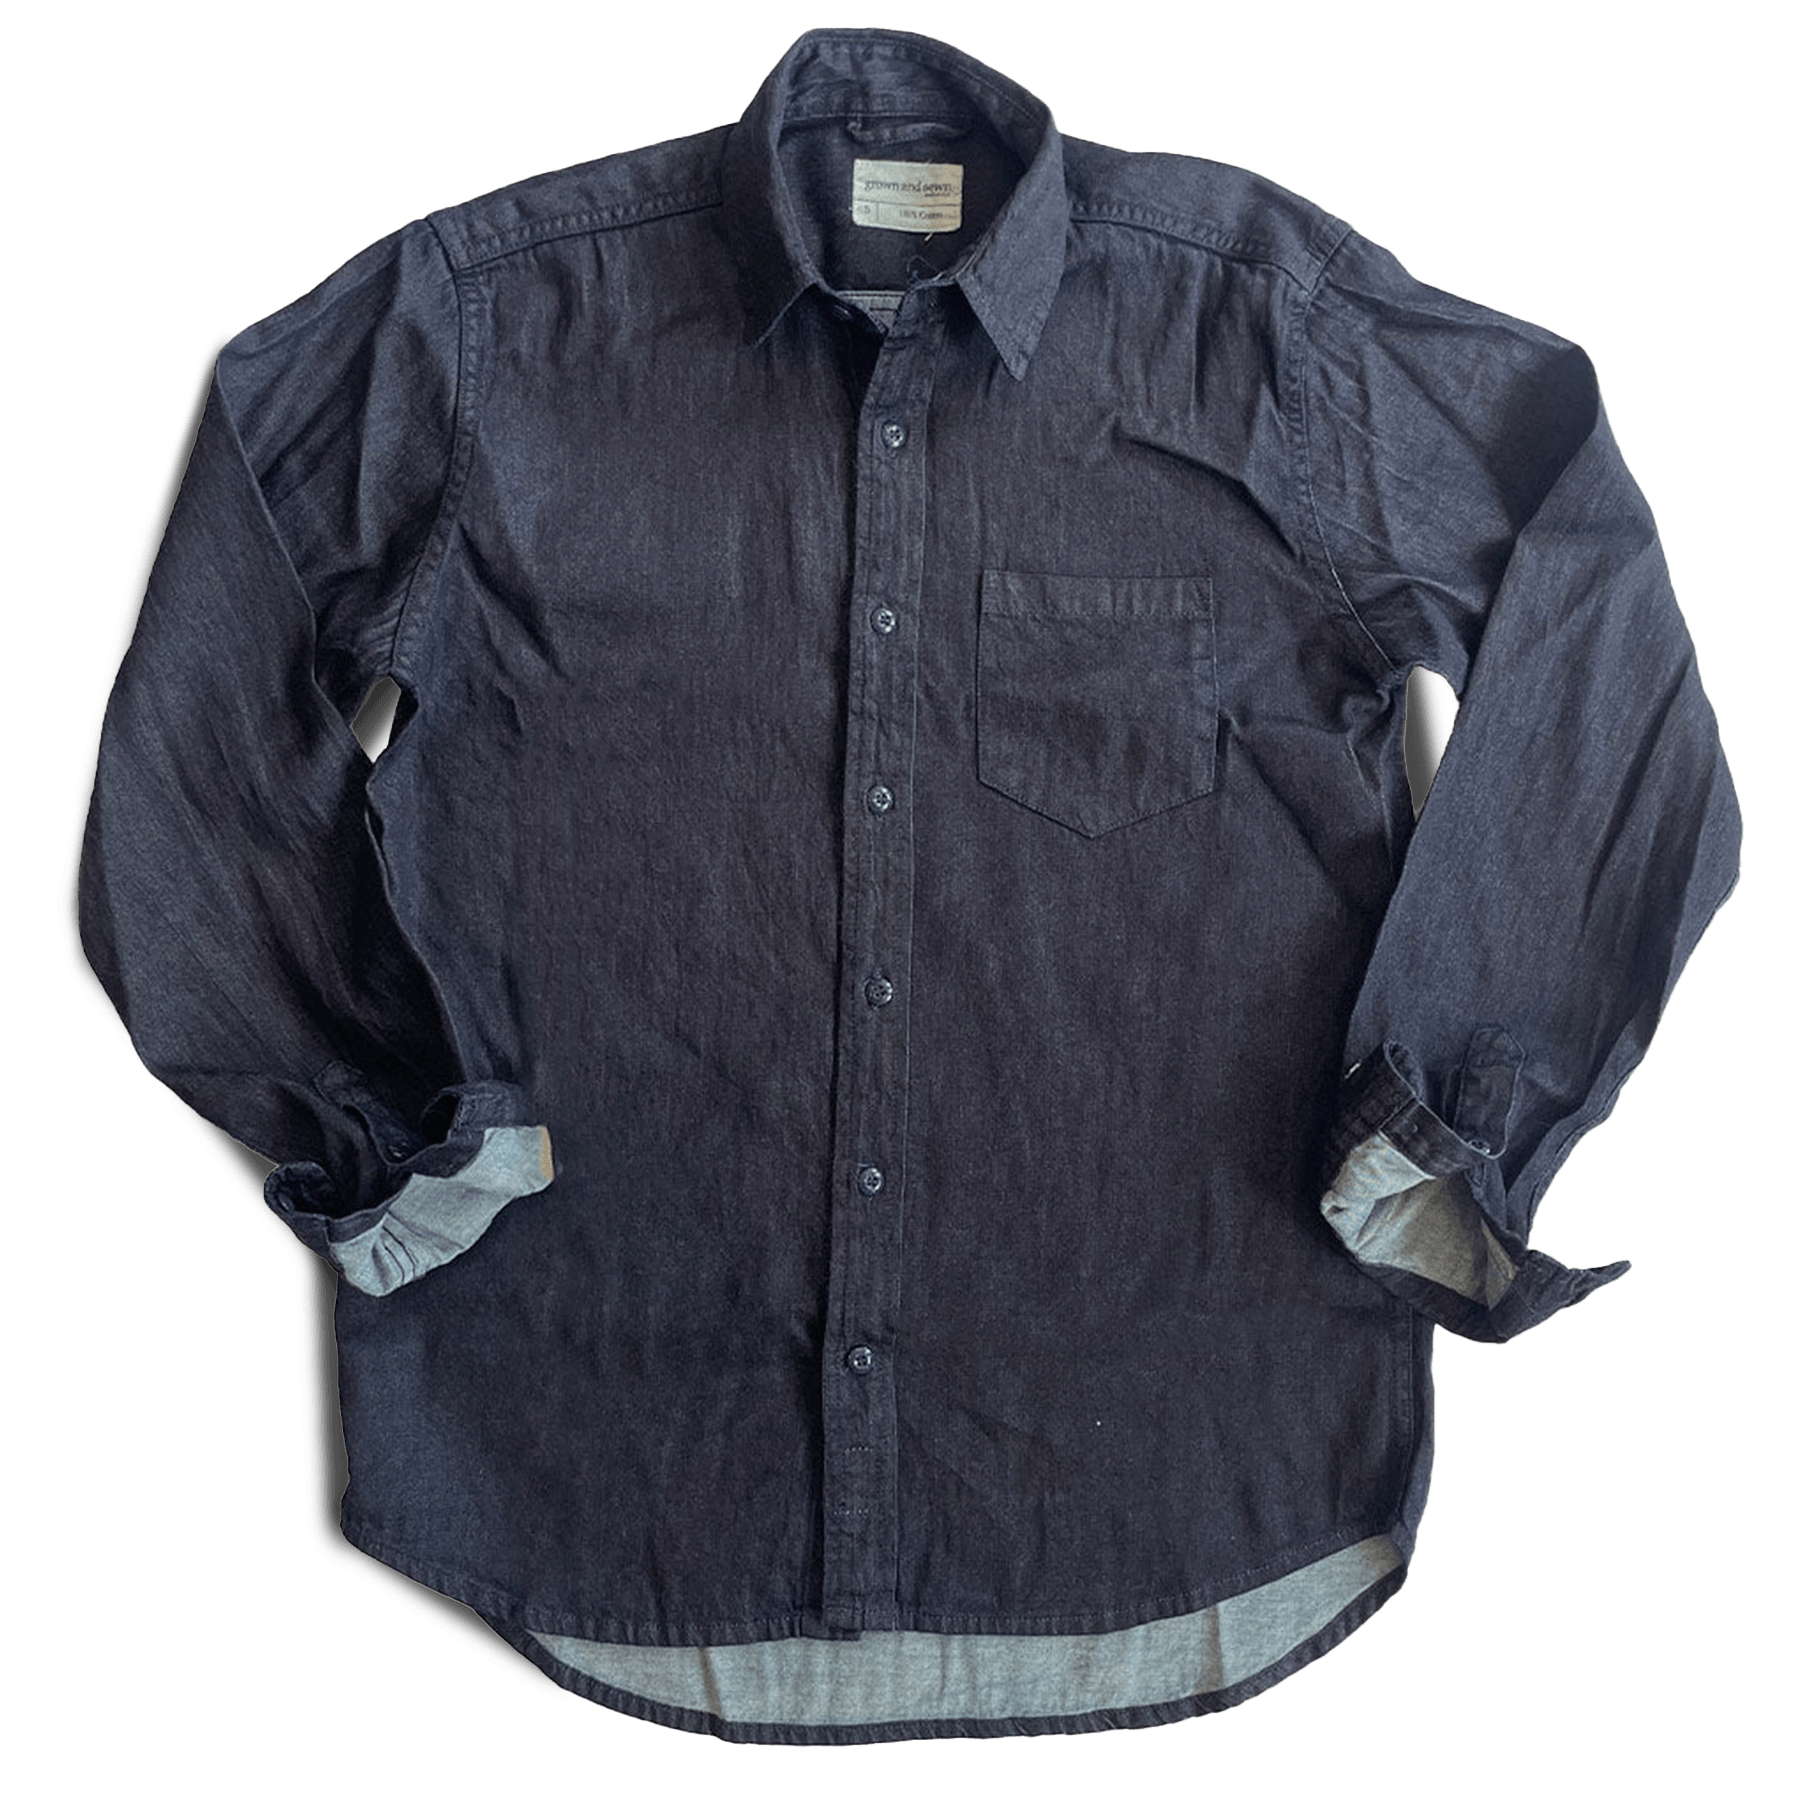 Dean Shirt - Natural Indigo Twill - grown&sewn